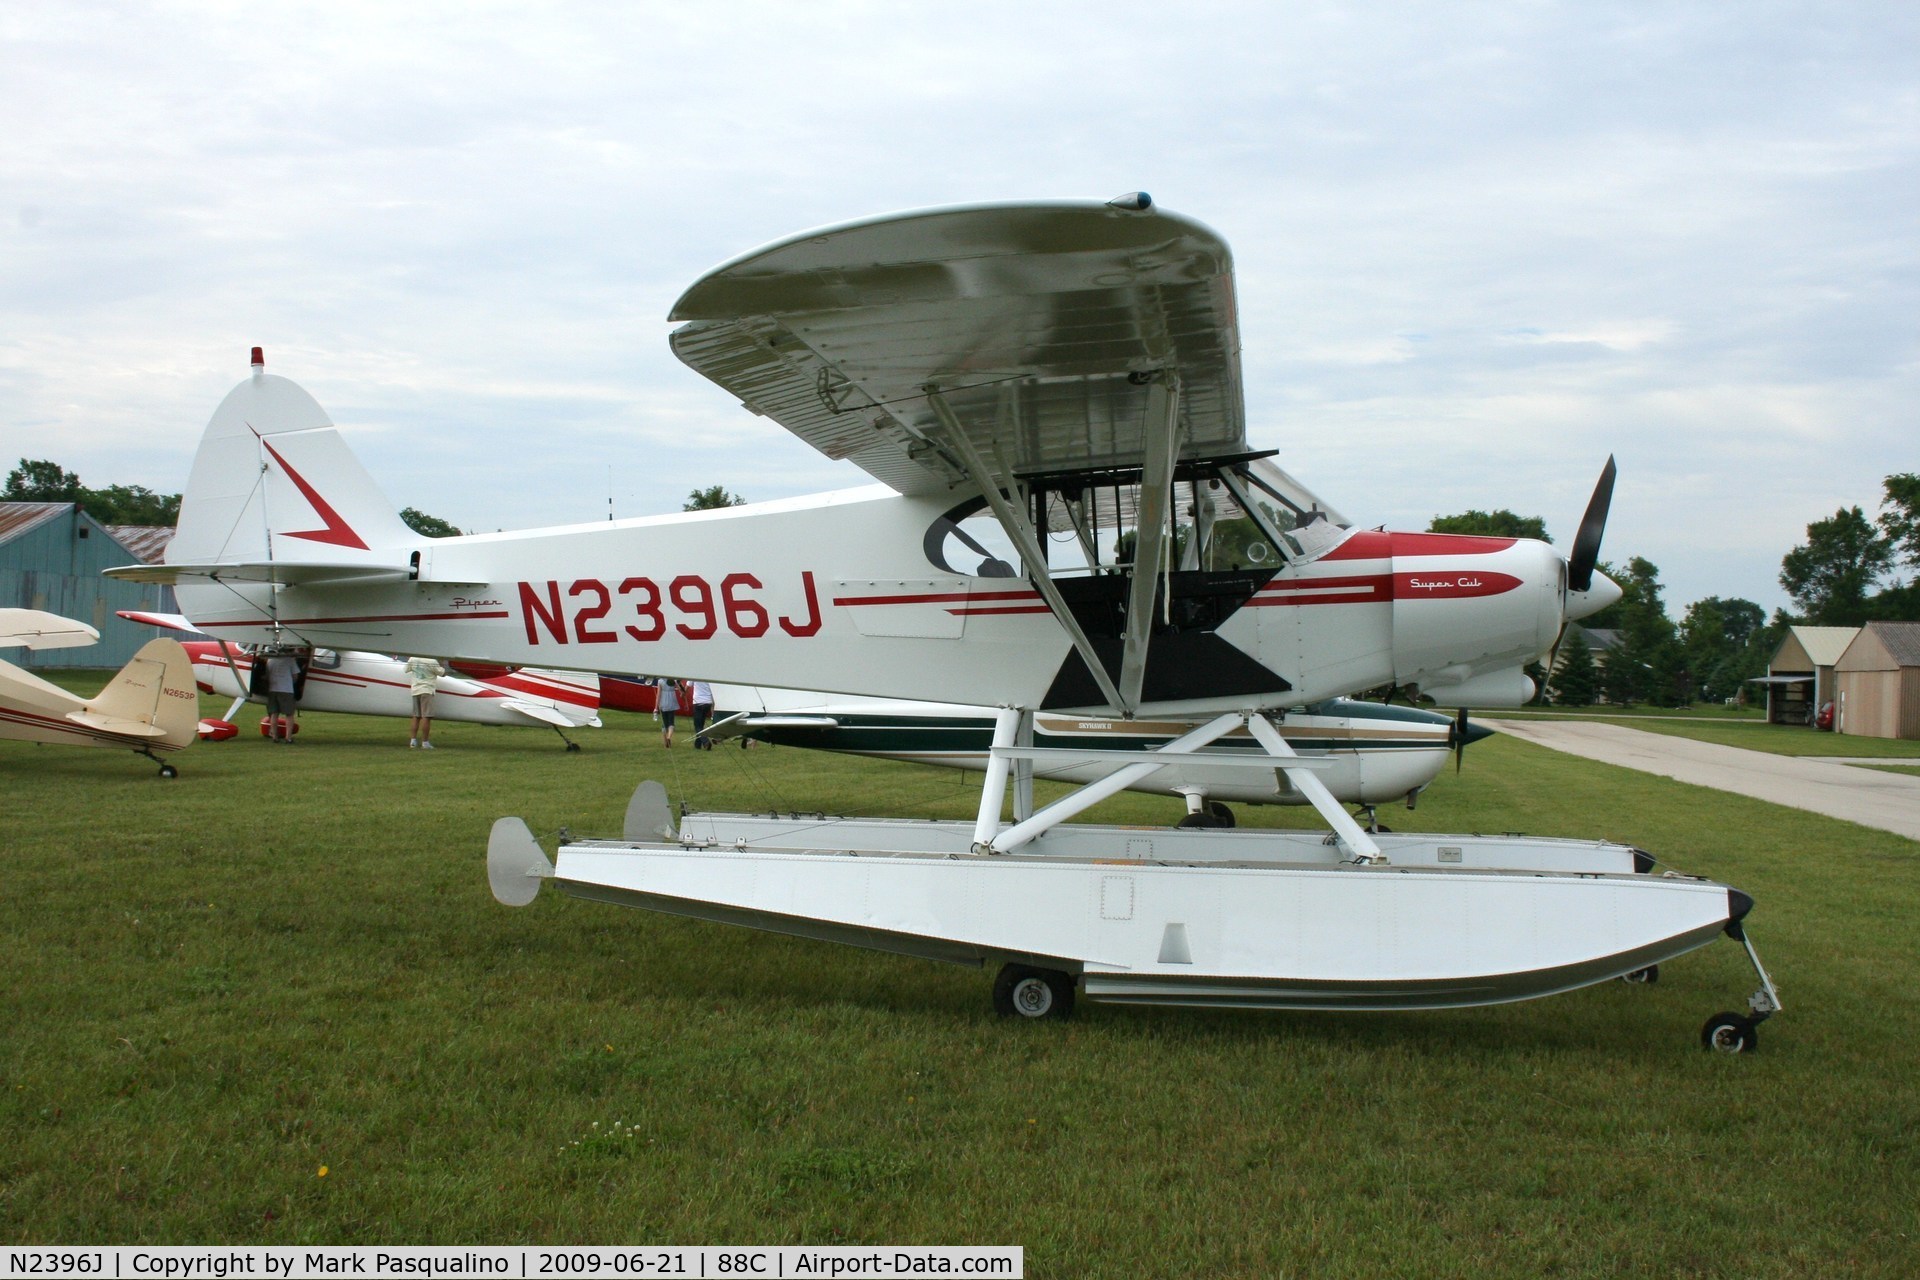 N2396J, 1979 Piper PA-18-150 Super Cub C/N 18-7909116, Piper PA-18-150